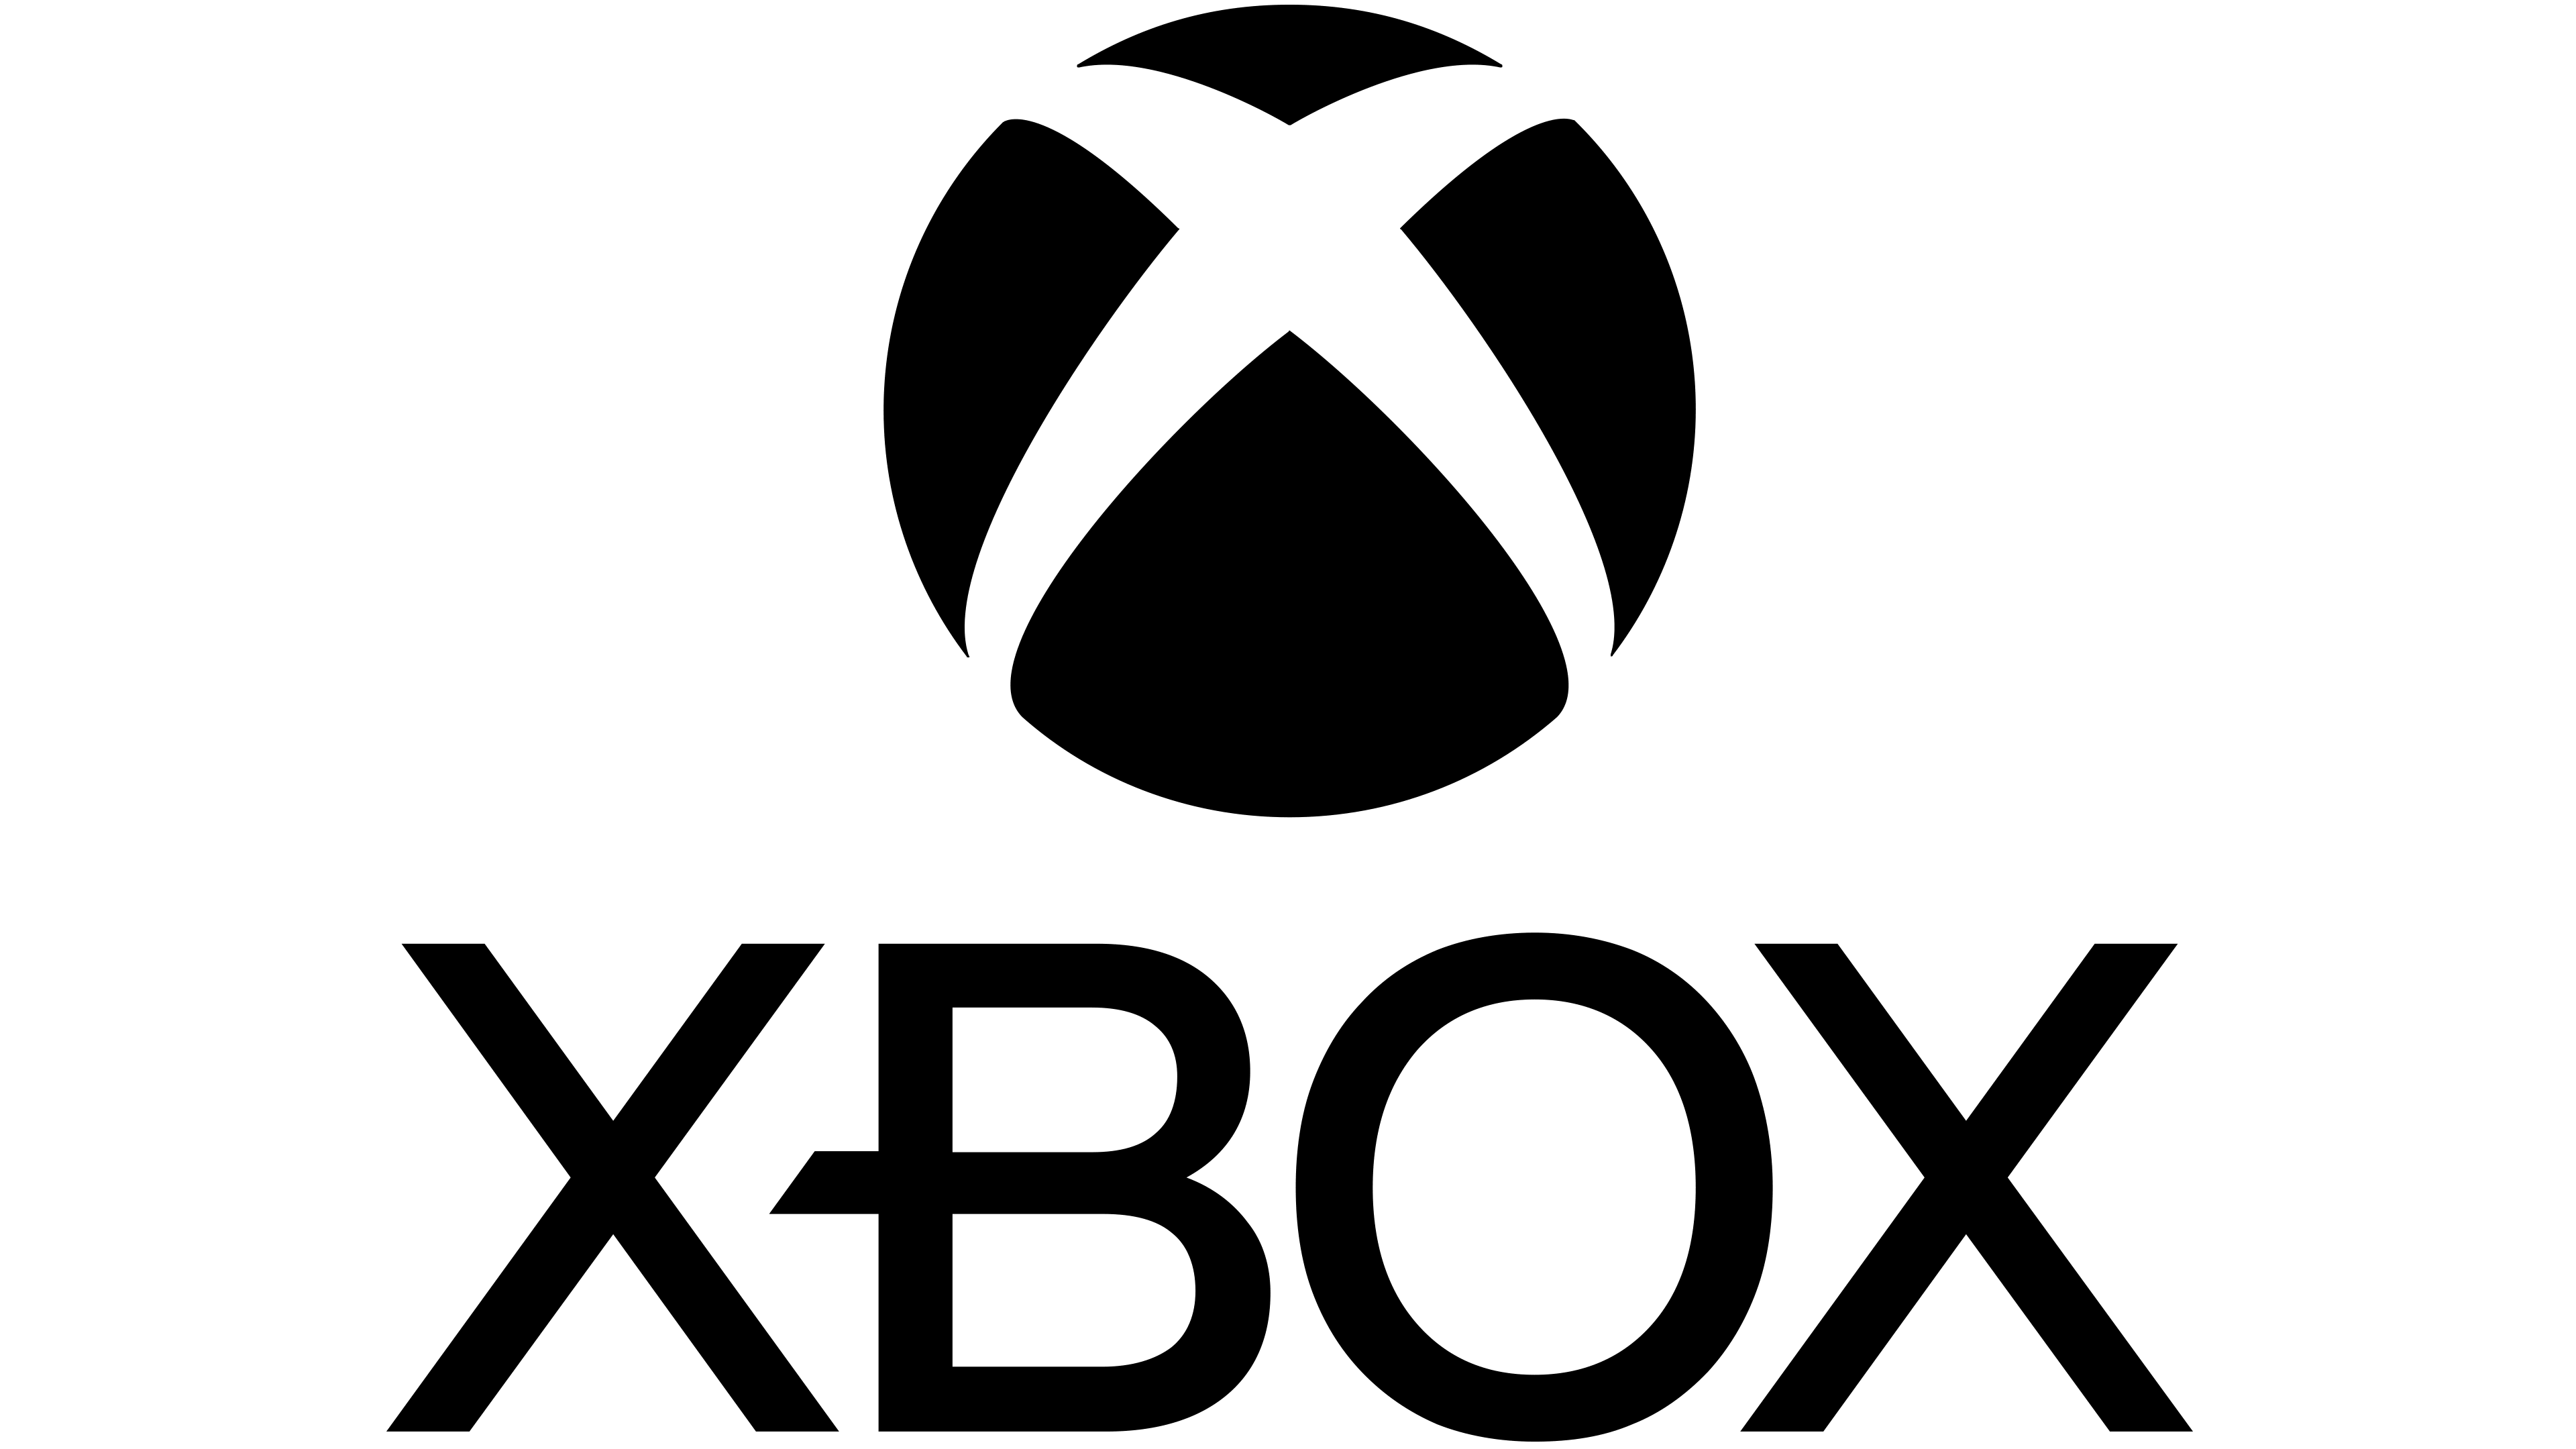 Imagens de xbox logo png